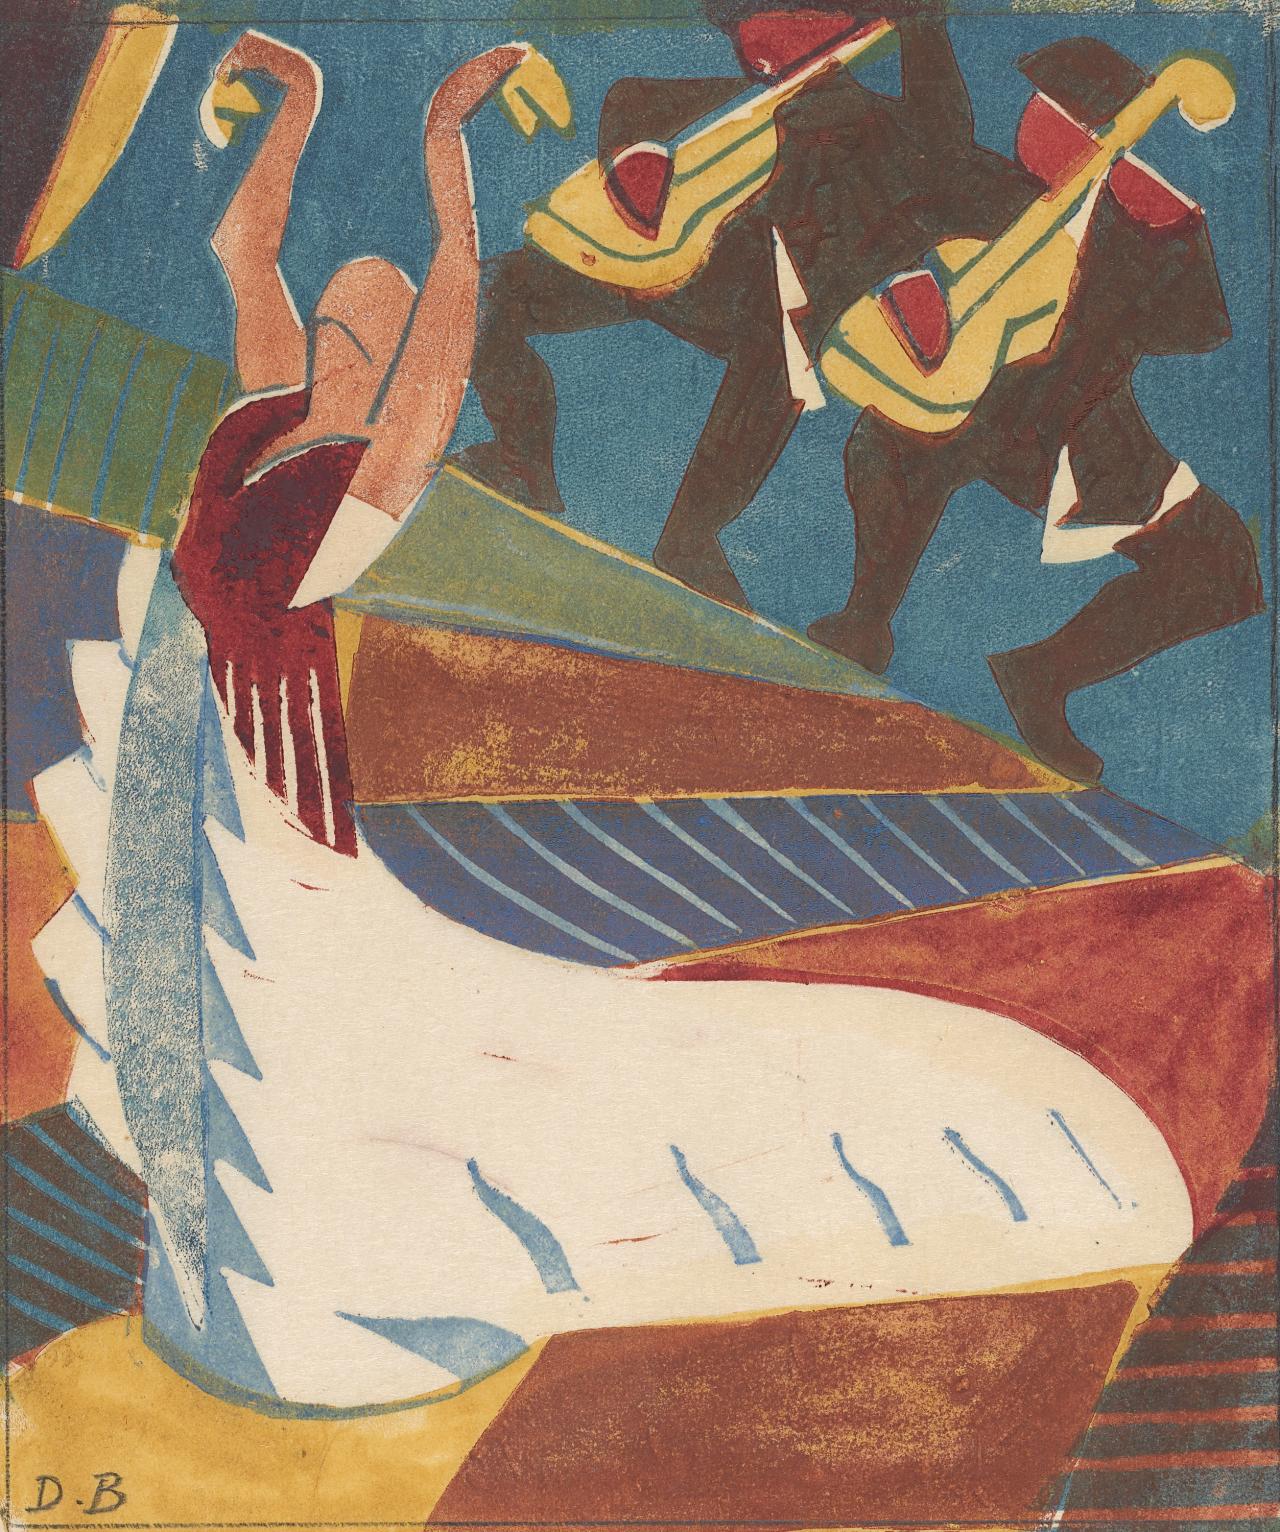 아르헨티나(스페인 무용수) (Argentina (The Spanish Dancer)) by Dorrit Black - 약 1929년 - 18.8 × 16.0 cm 